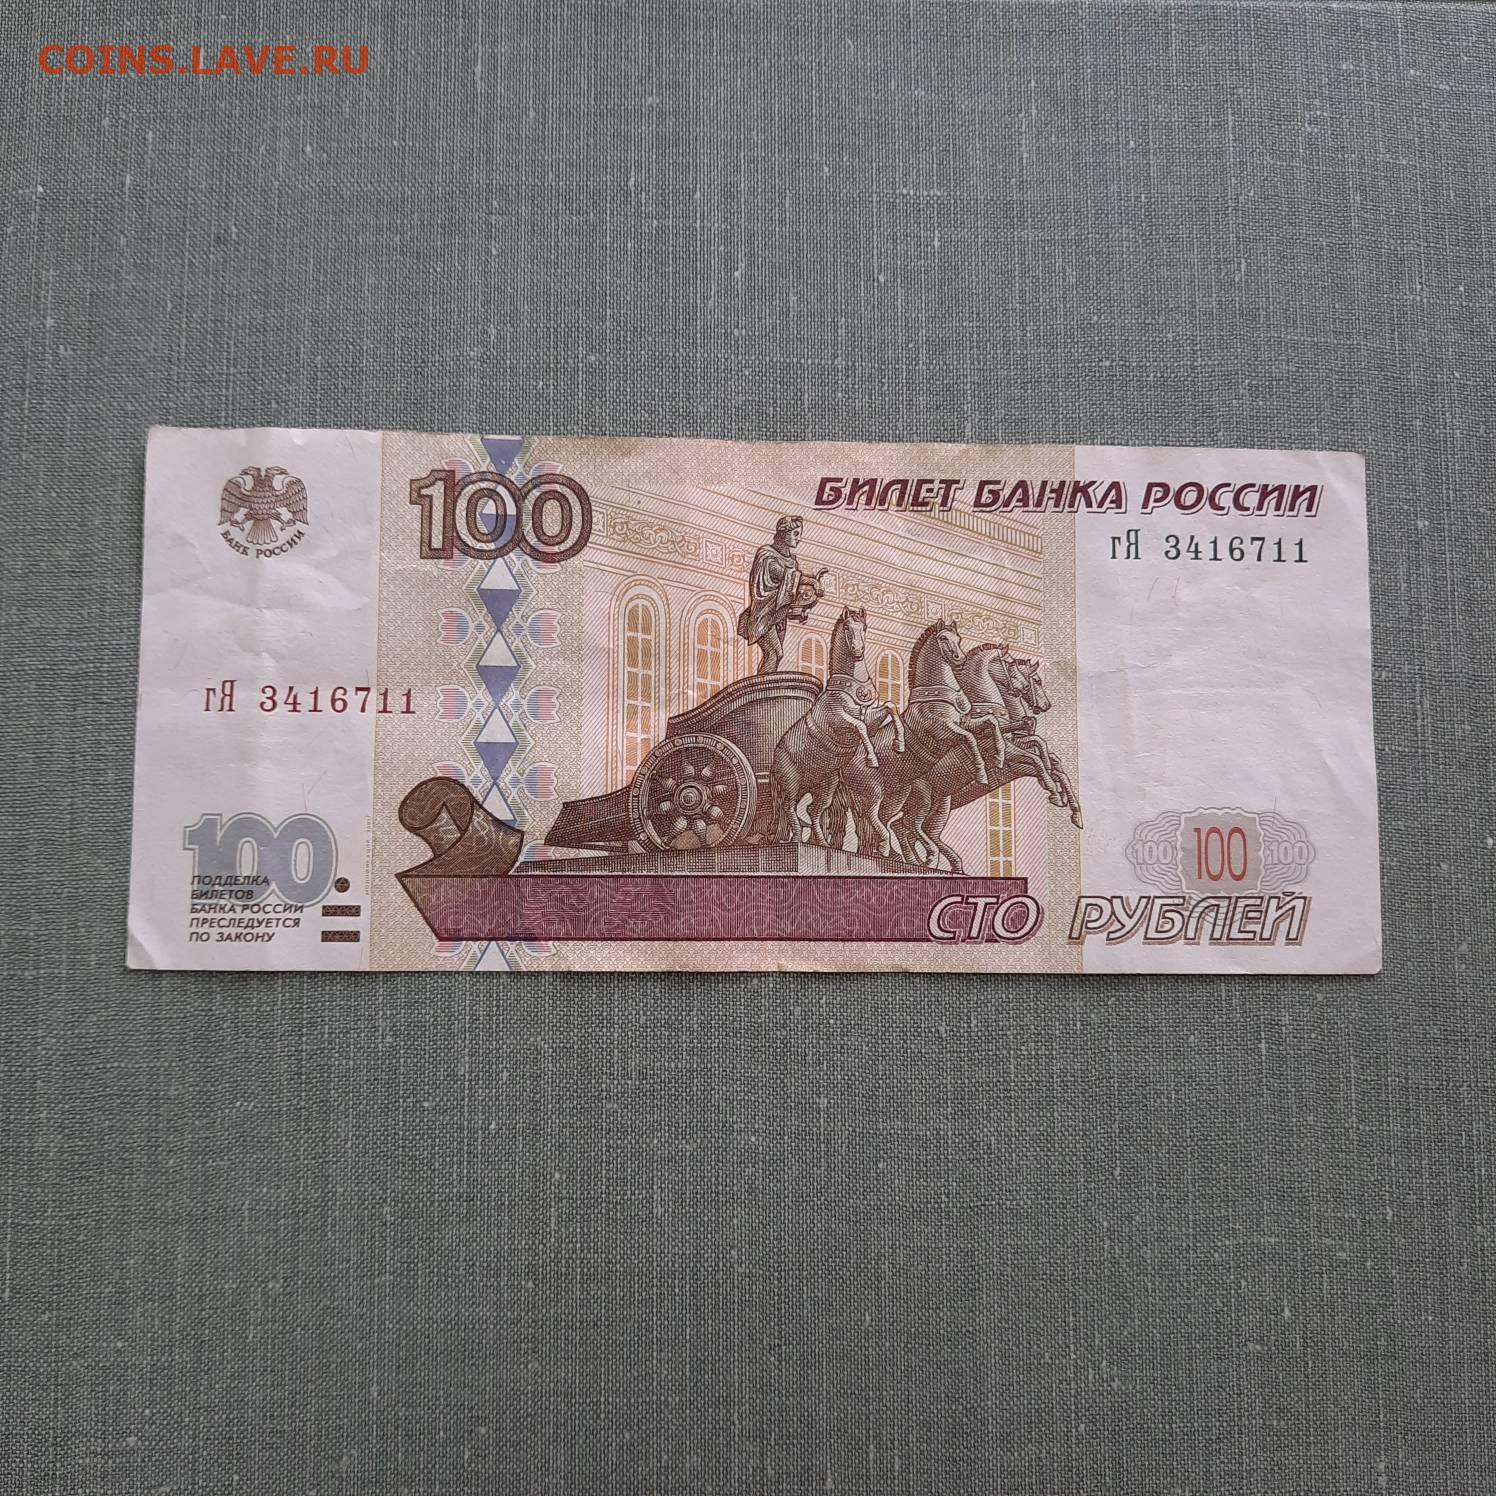 500 рублей зеленые. СТО рублей модификация 2001. 100 Рублей модификация 2001. 100 Рублей 1997. 10 Рублей модификация 2001.